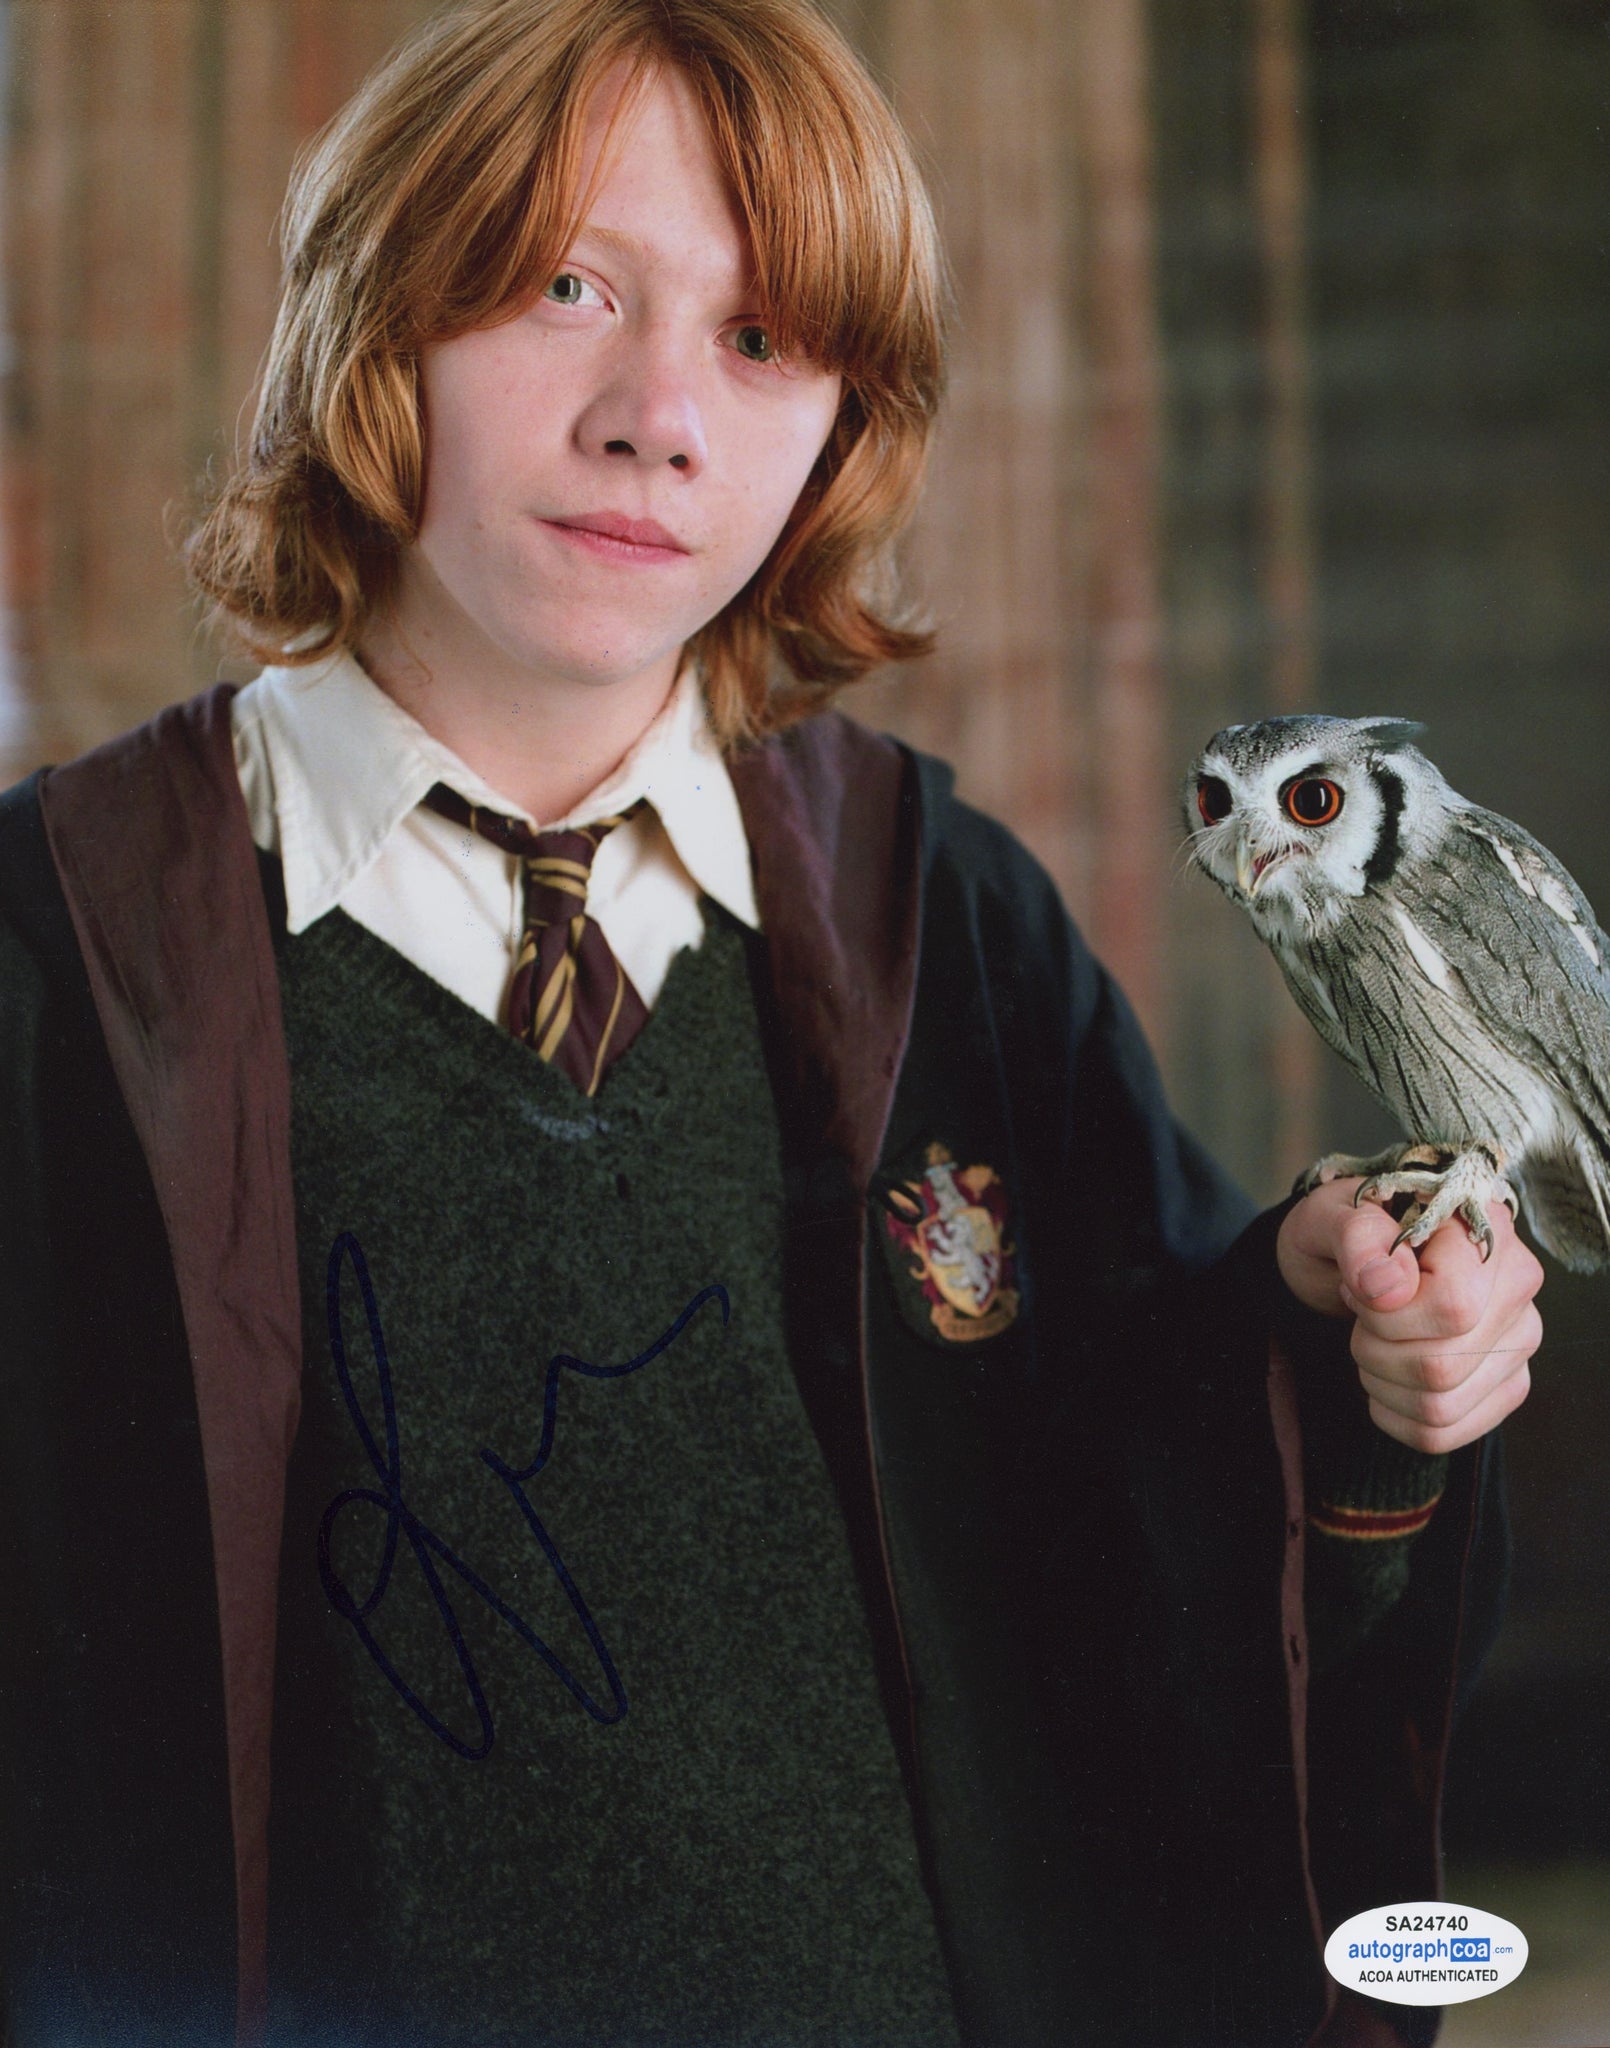 Rupert Grint Harry Potter Signed Autograph 8x10 ACOA - Outlaw Hobbies Authentic Autographs